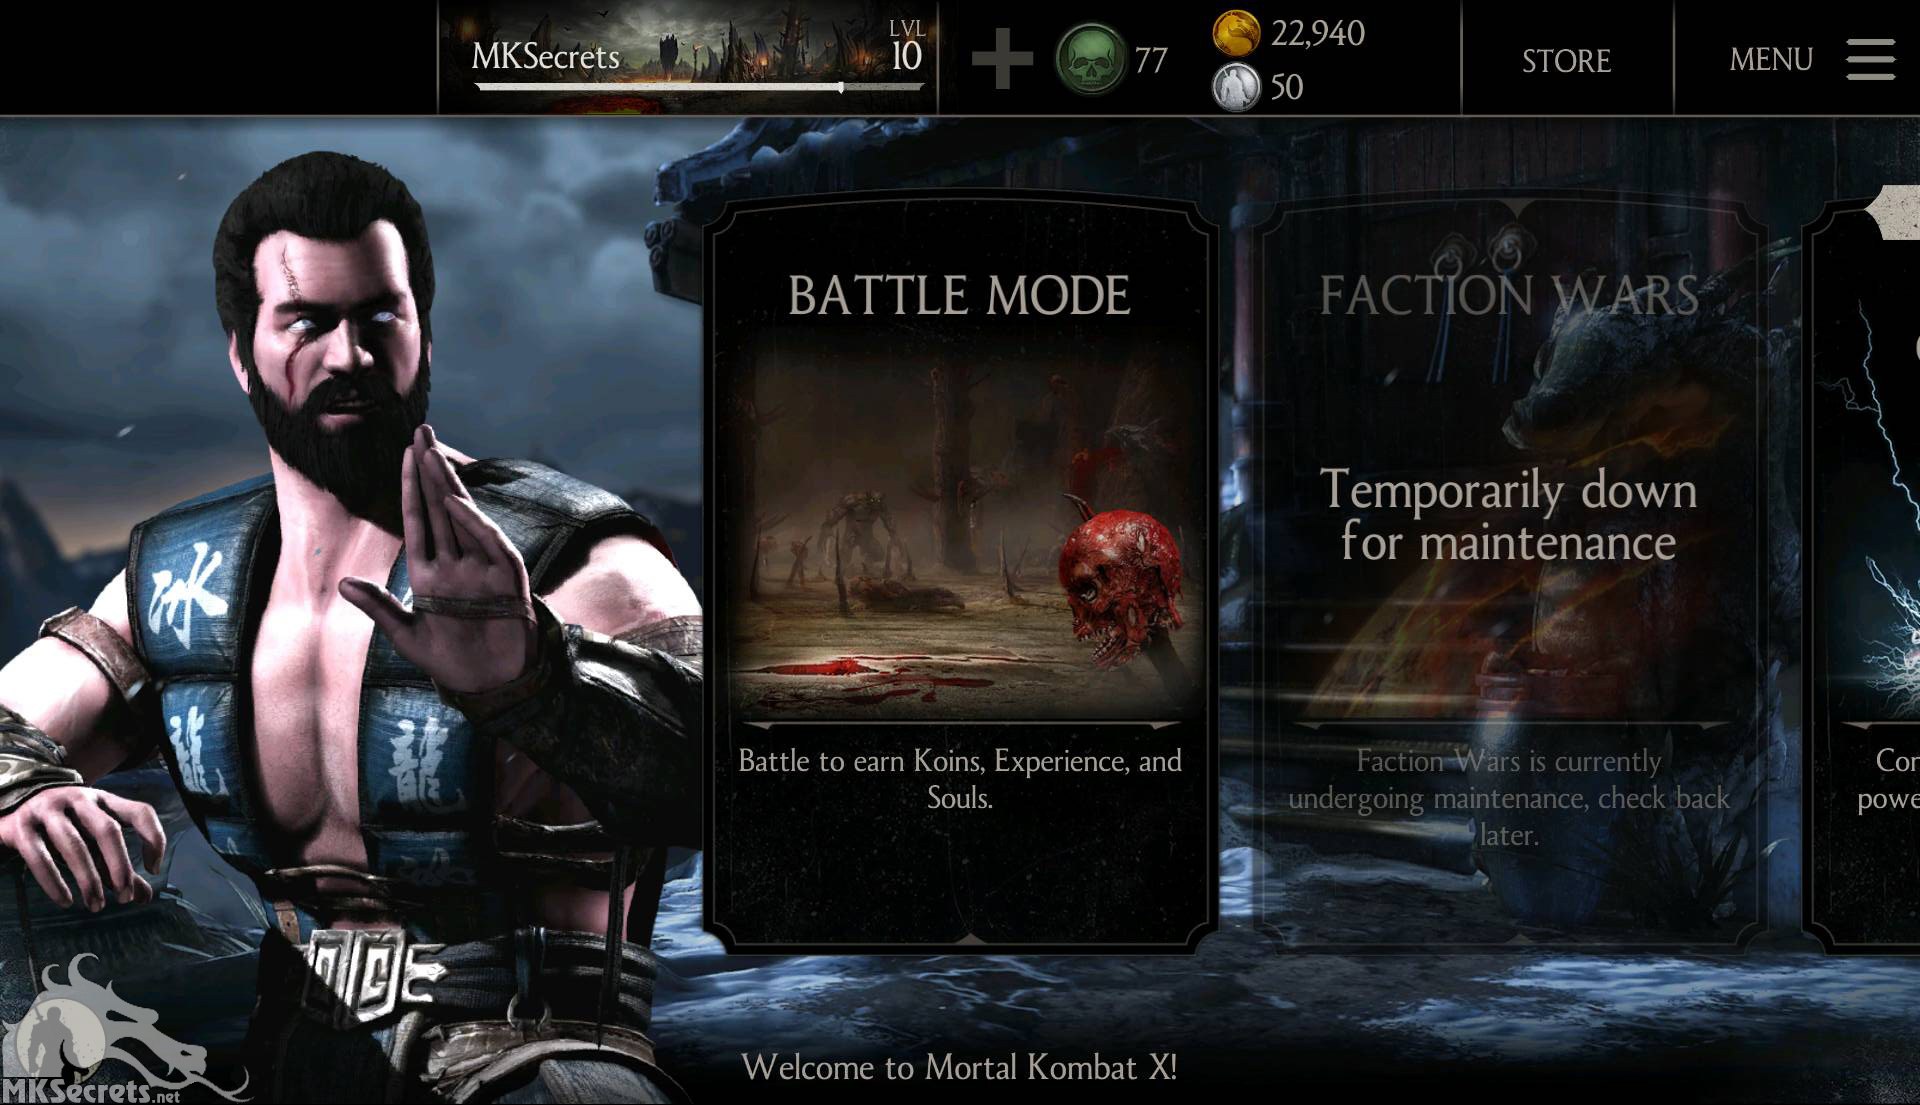 Ввести мортал комбат. Меню мортал комбат 10. Mortal Kombat x mobile версия 1.1.0. МК Х мобайл. Mortal Kombat 10 главное меню.